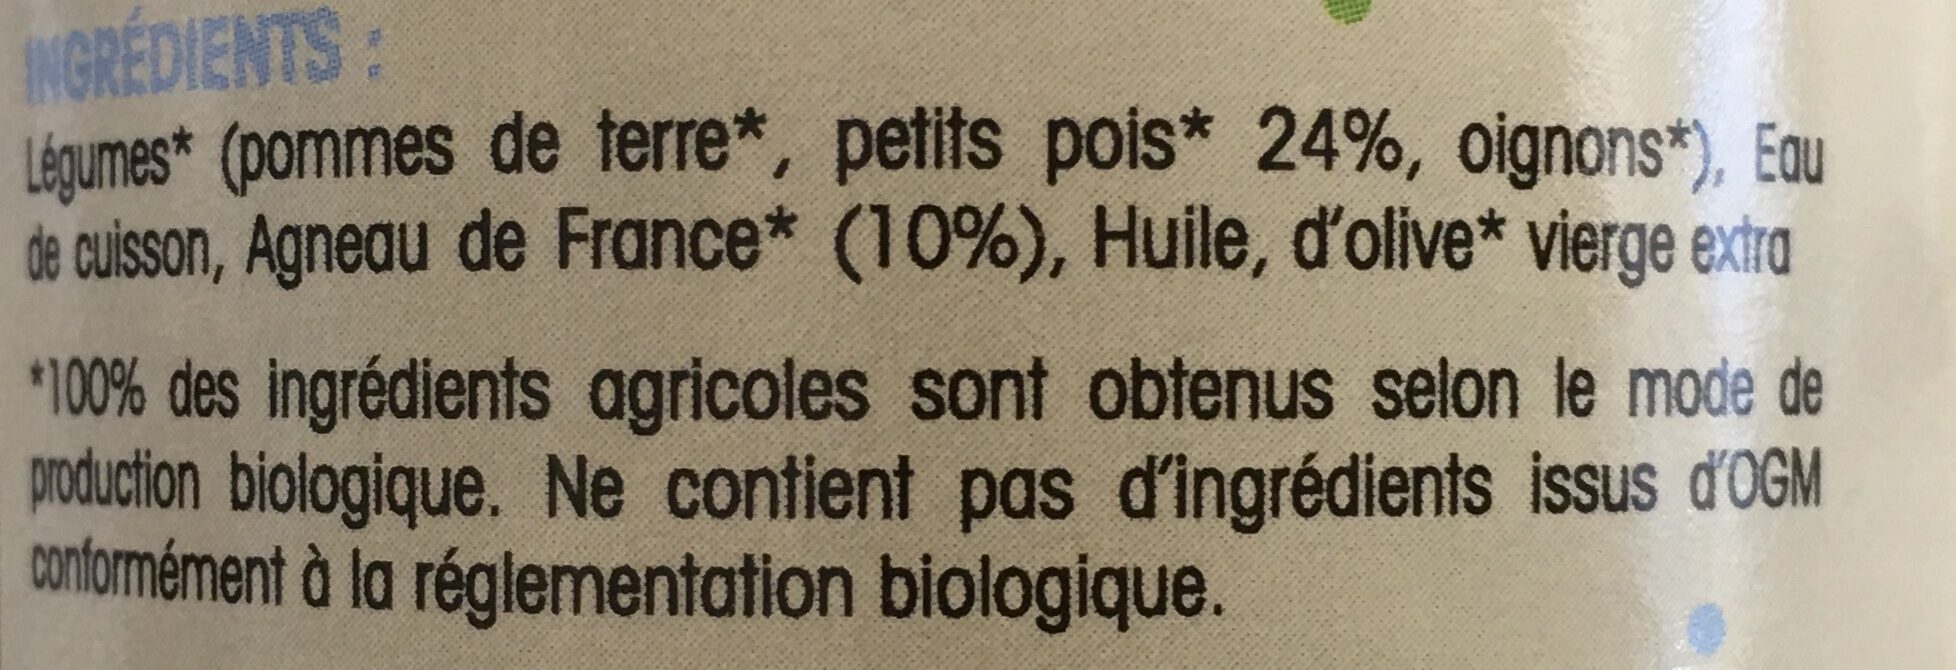 Pot Pois Agneau De France - Ingrédients